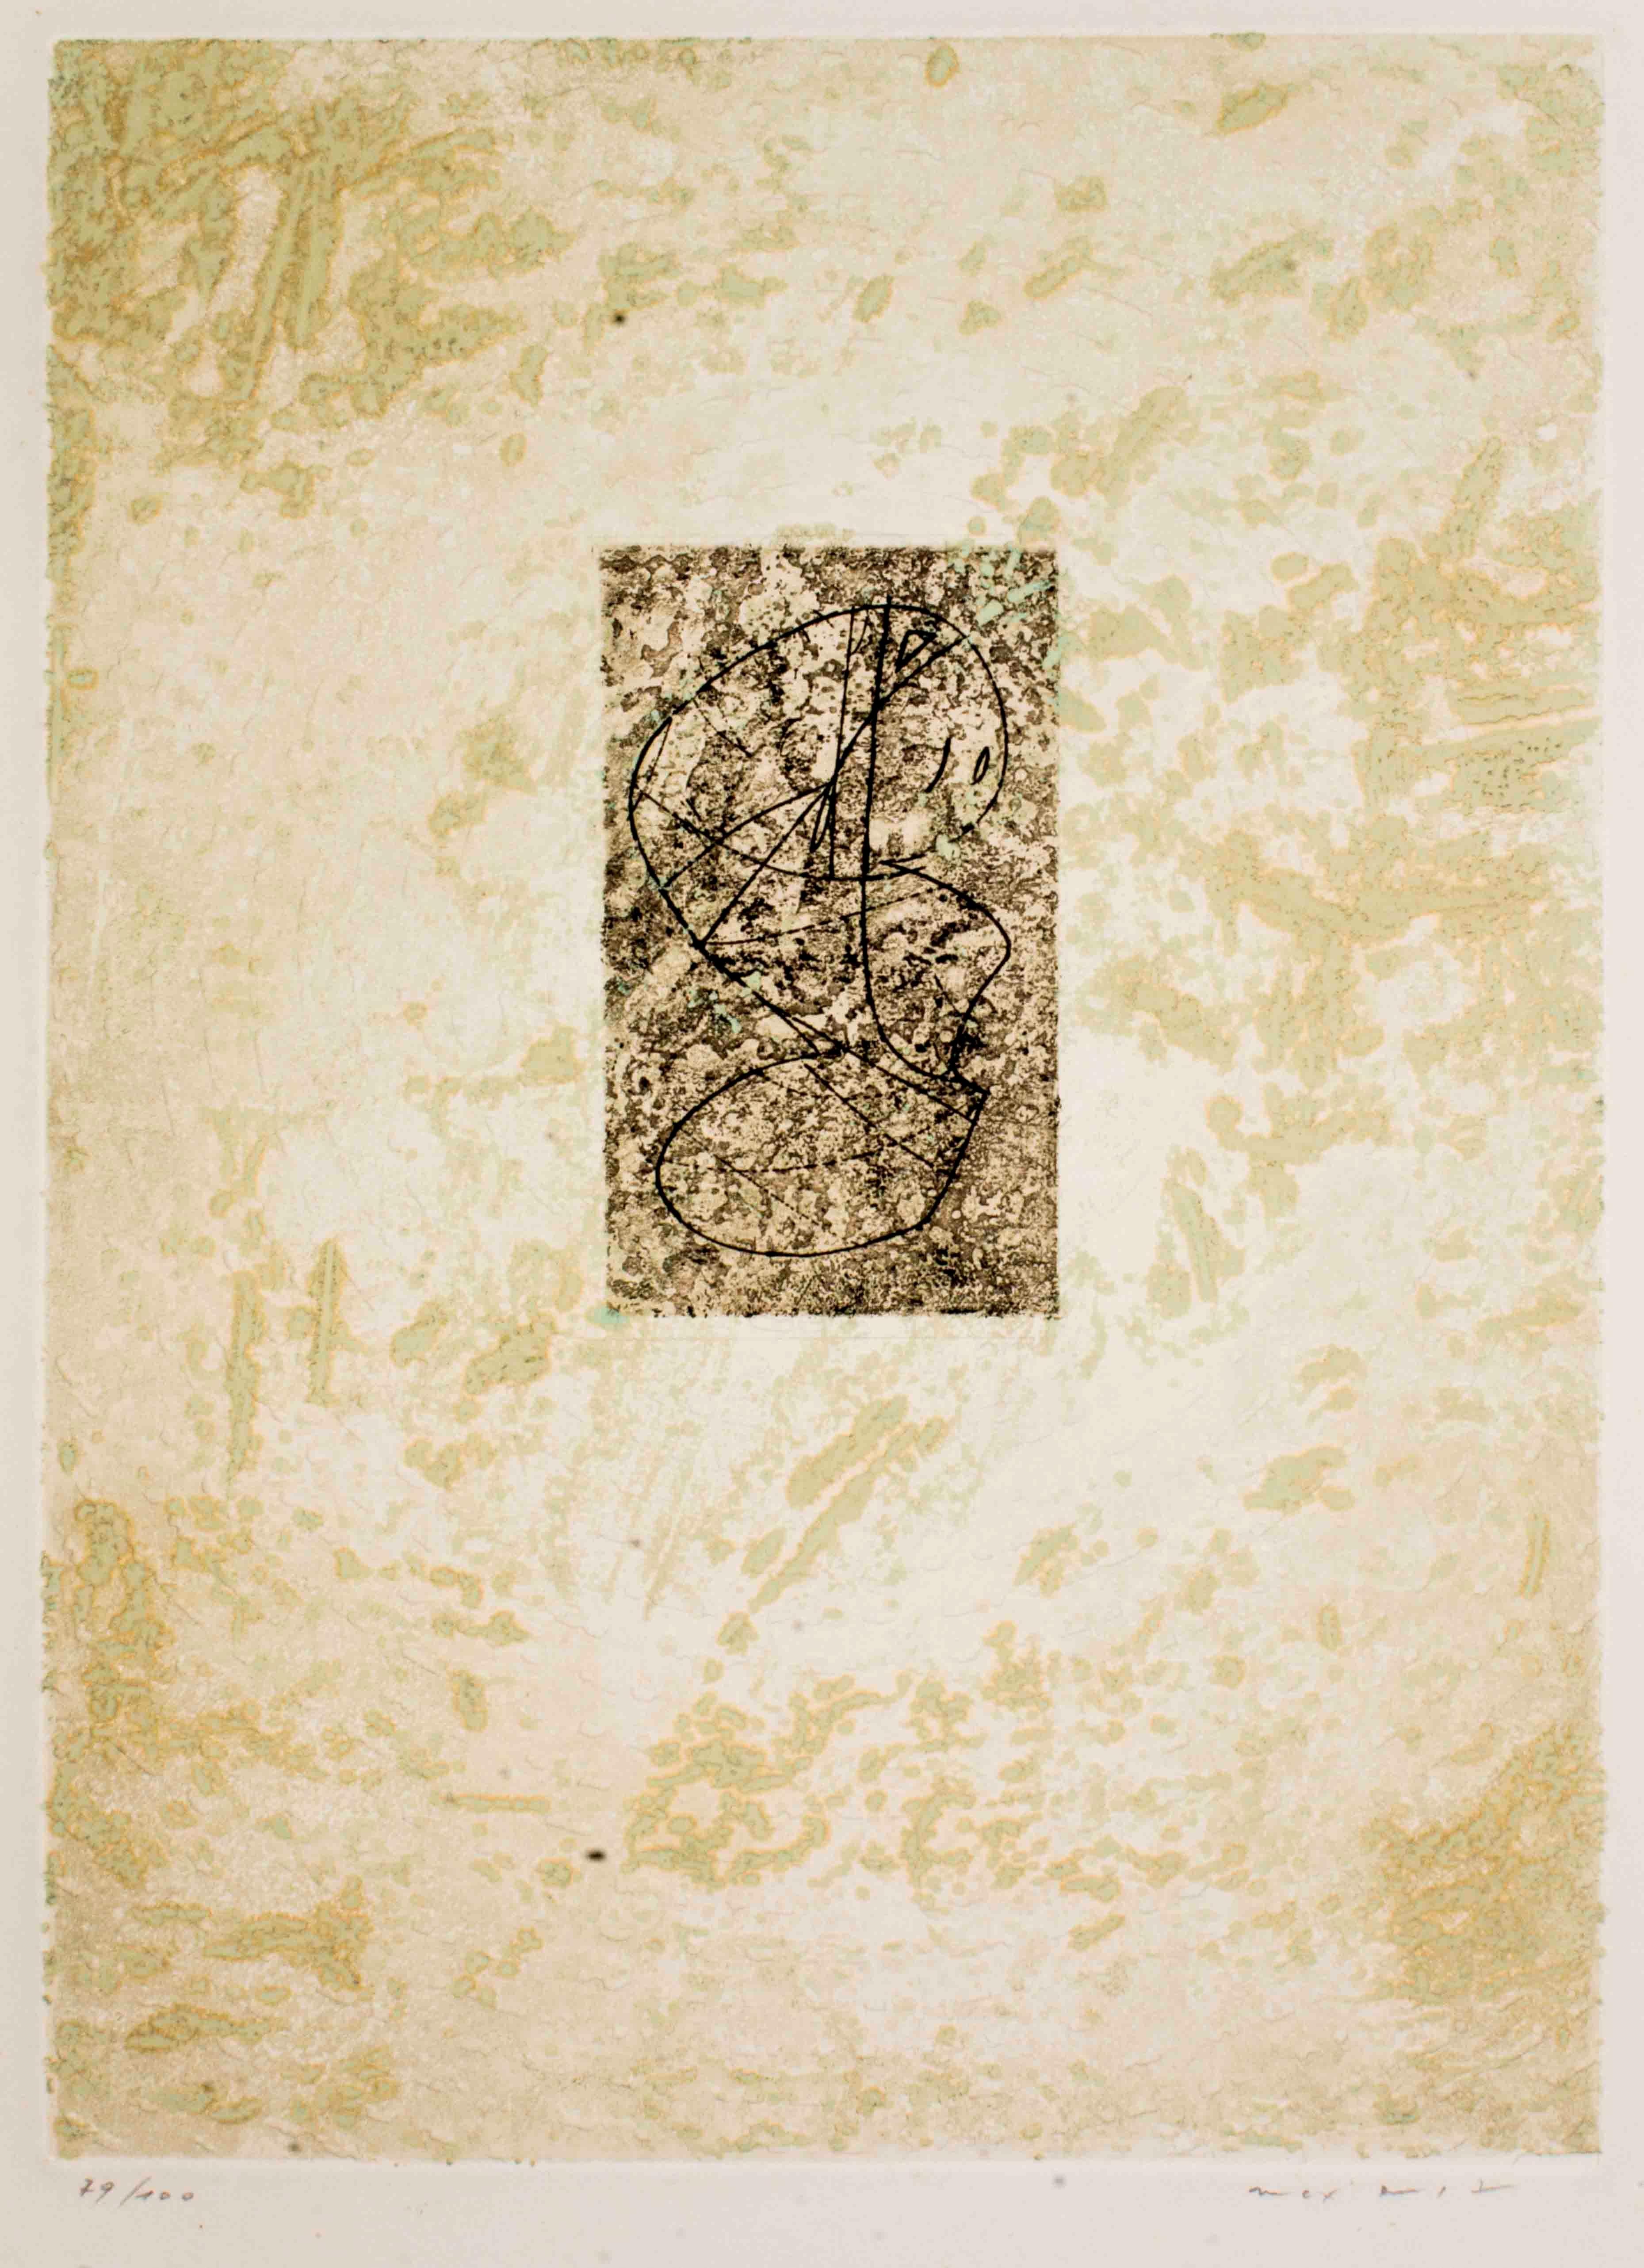 "Zodiaque" ist eine Radierung von Max Ernst aus dem Jahr 1971. Dieser Druck ist handsigniert und nummeriert. Dies ist eine Auflage von 100 Drucken.

Referenz: Katalog Spies n. 144.

Max Ernst (1891-1976) war ursprünglich ein DADA-Aktivist in